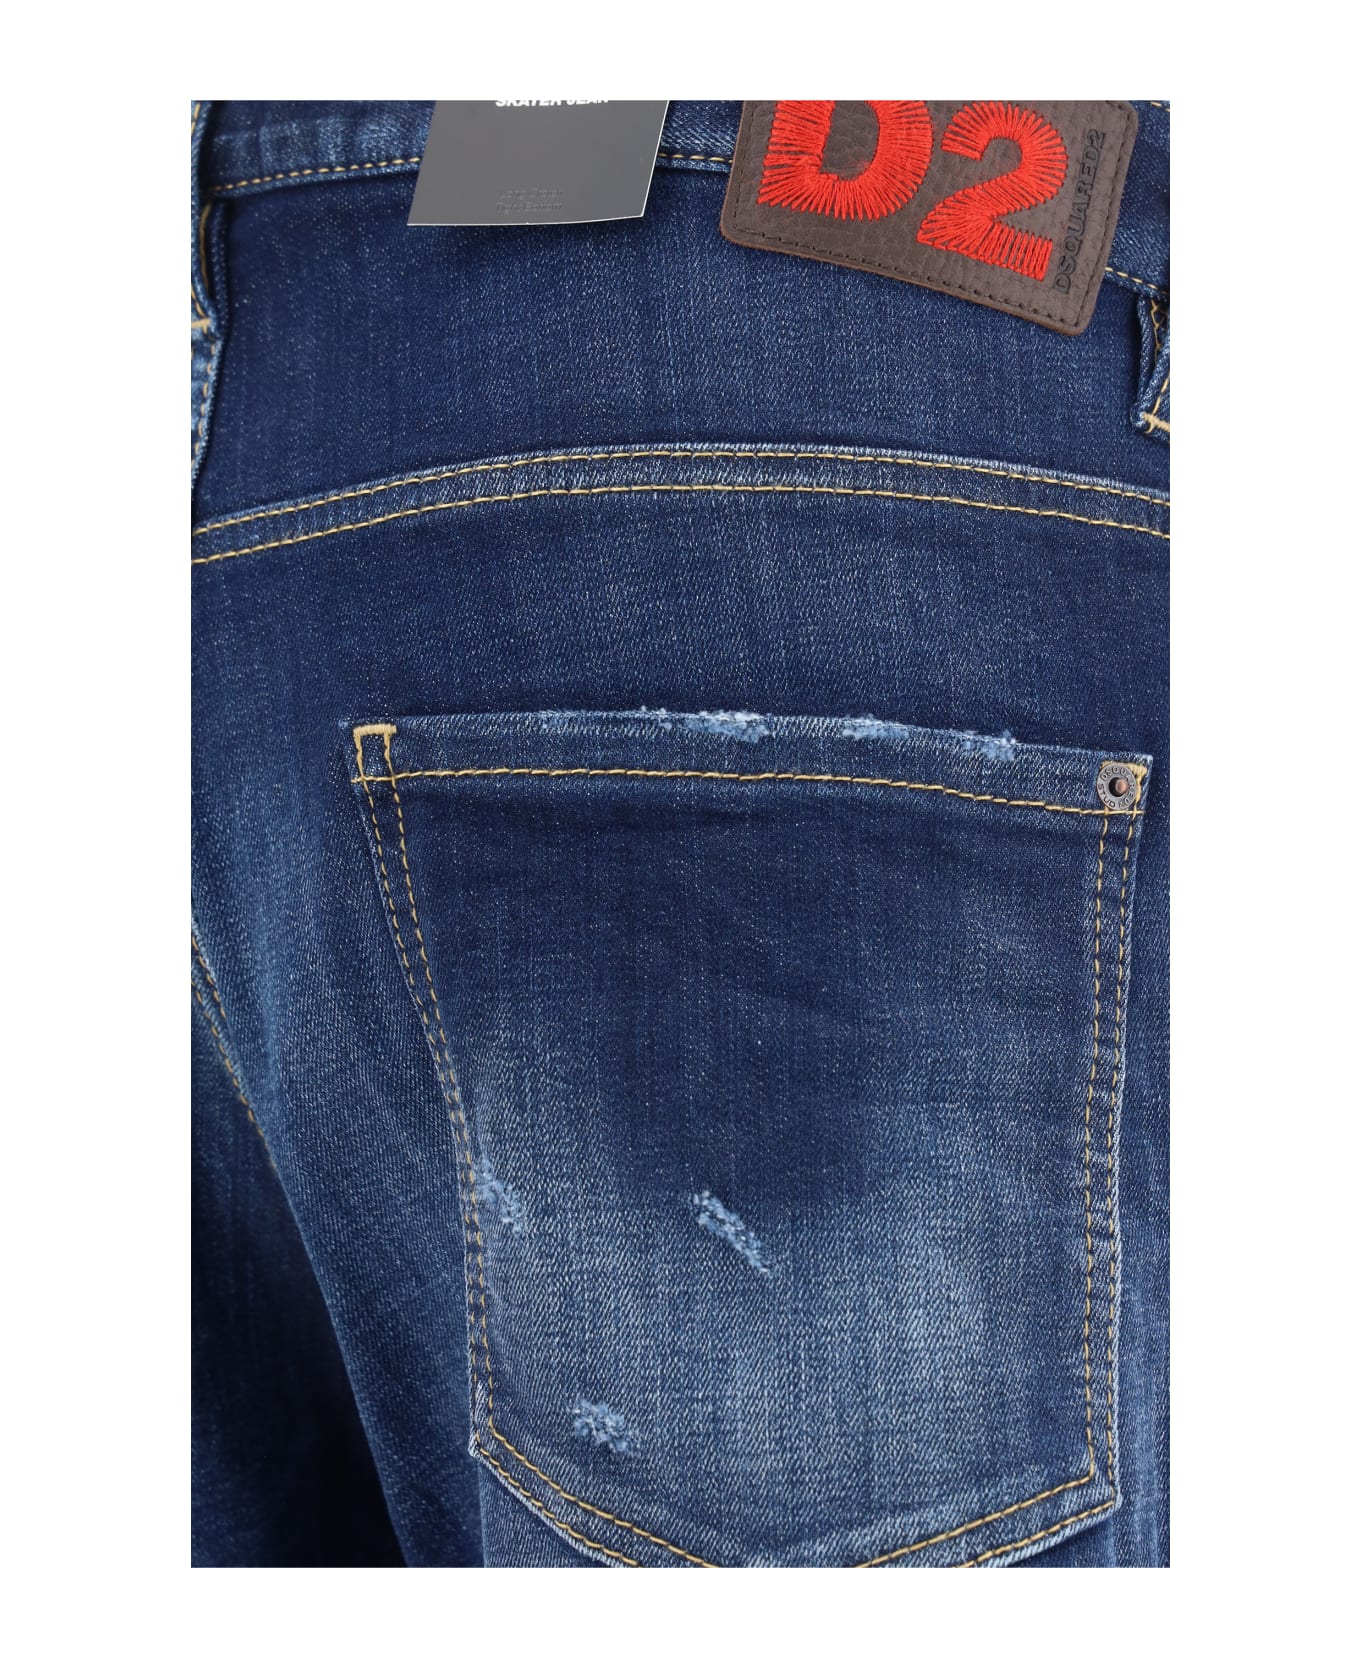 Dsquared2 Skater Jeans - Navy Blue デニム